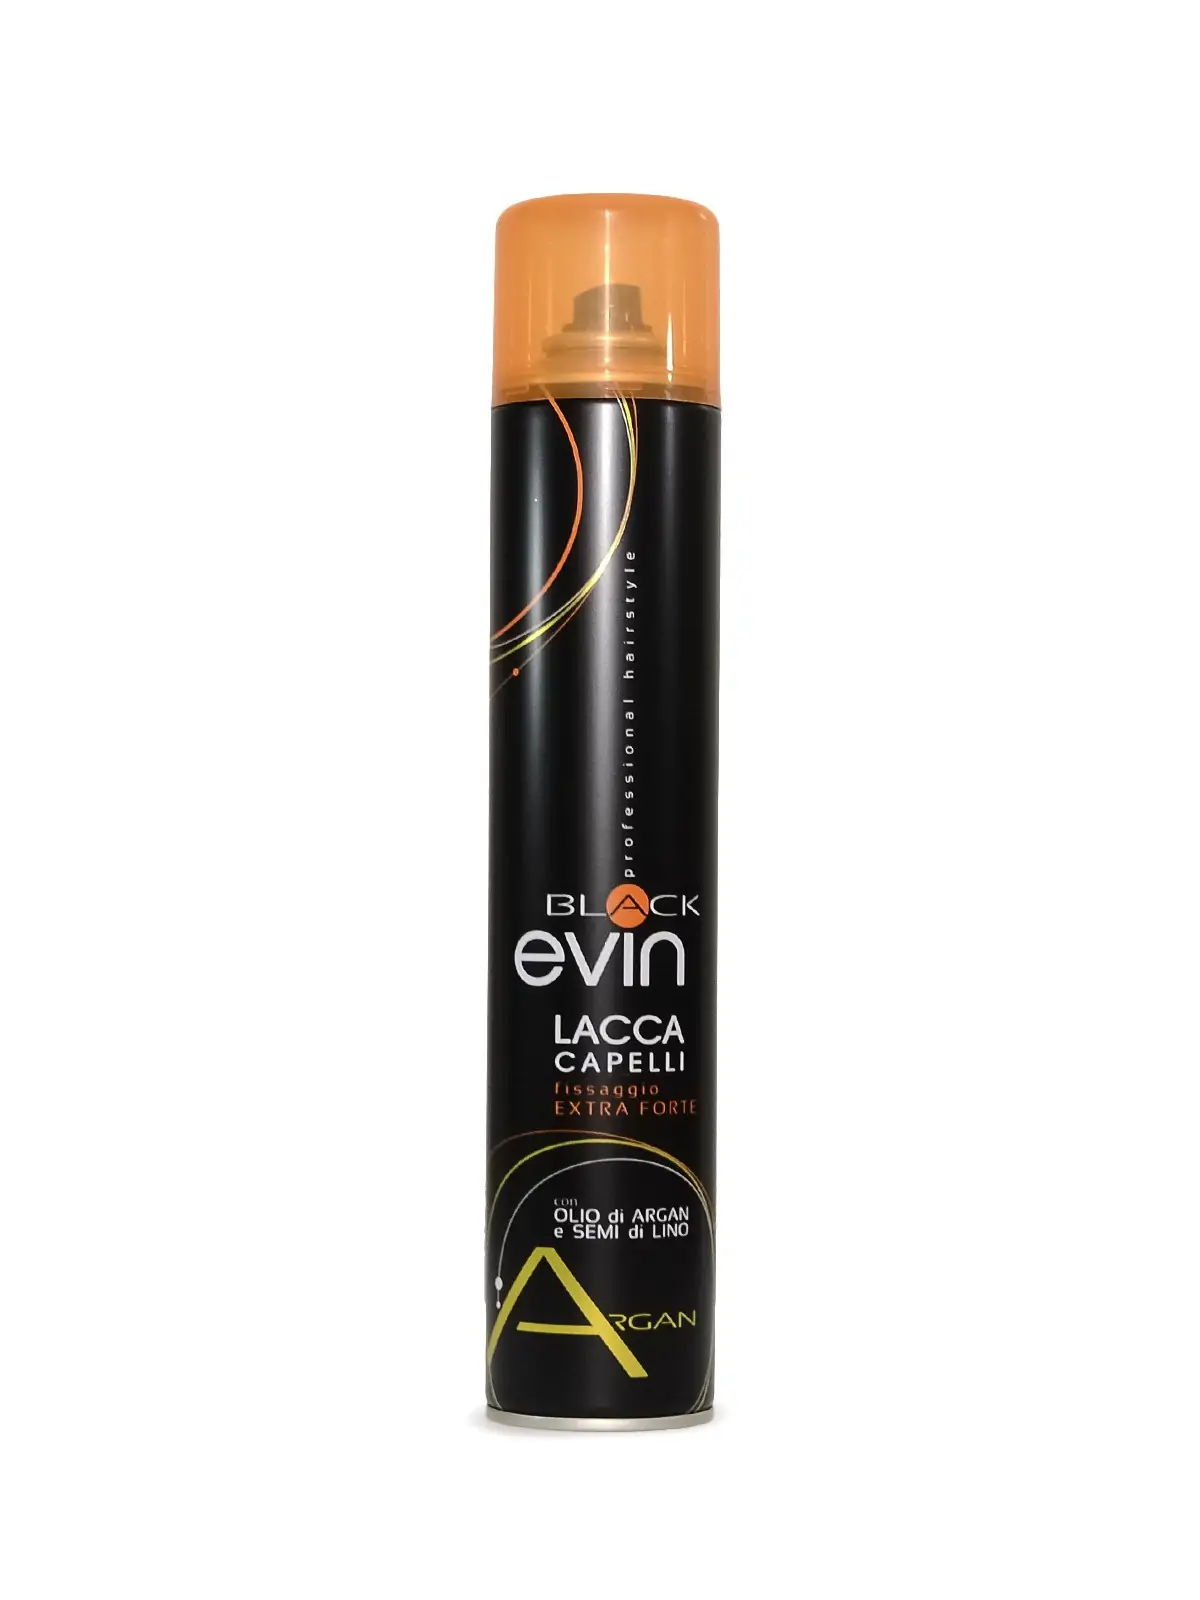 Evin Black lacca olio argan e semi di lino 500 ml 4,90 € -30%